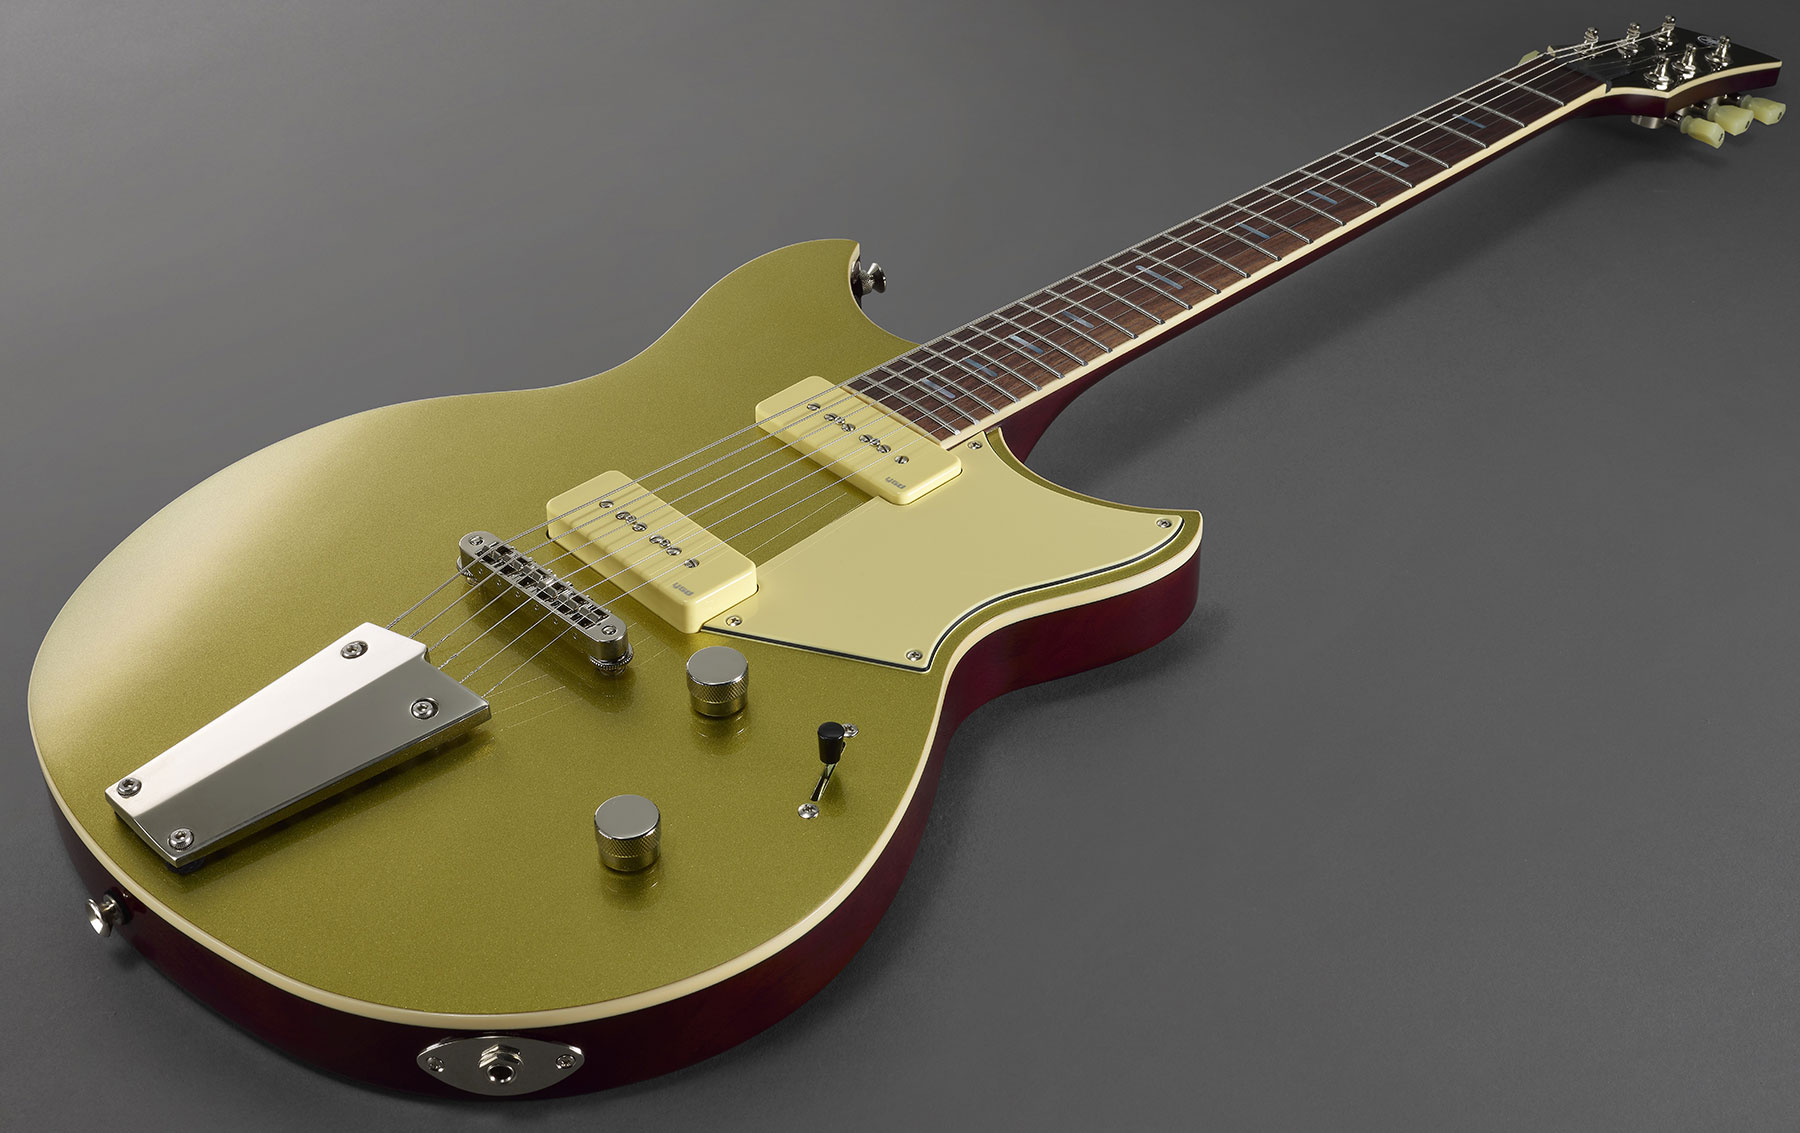 Yamaha Rsp02t Revstar Professionnal Jap 2p90 Ht Rw - Crisp Gold - Guitarra eléctrica de doble corte. - Variation 3